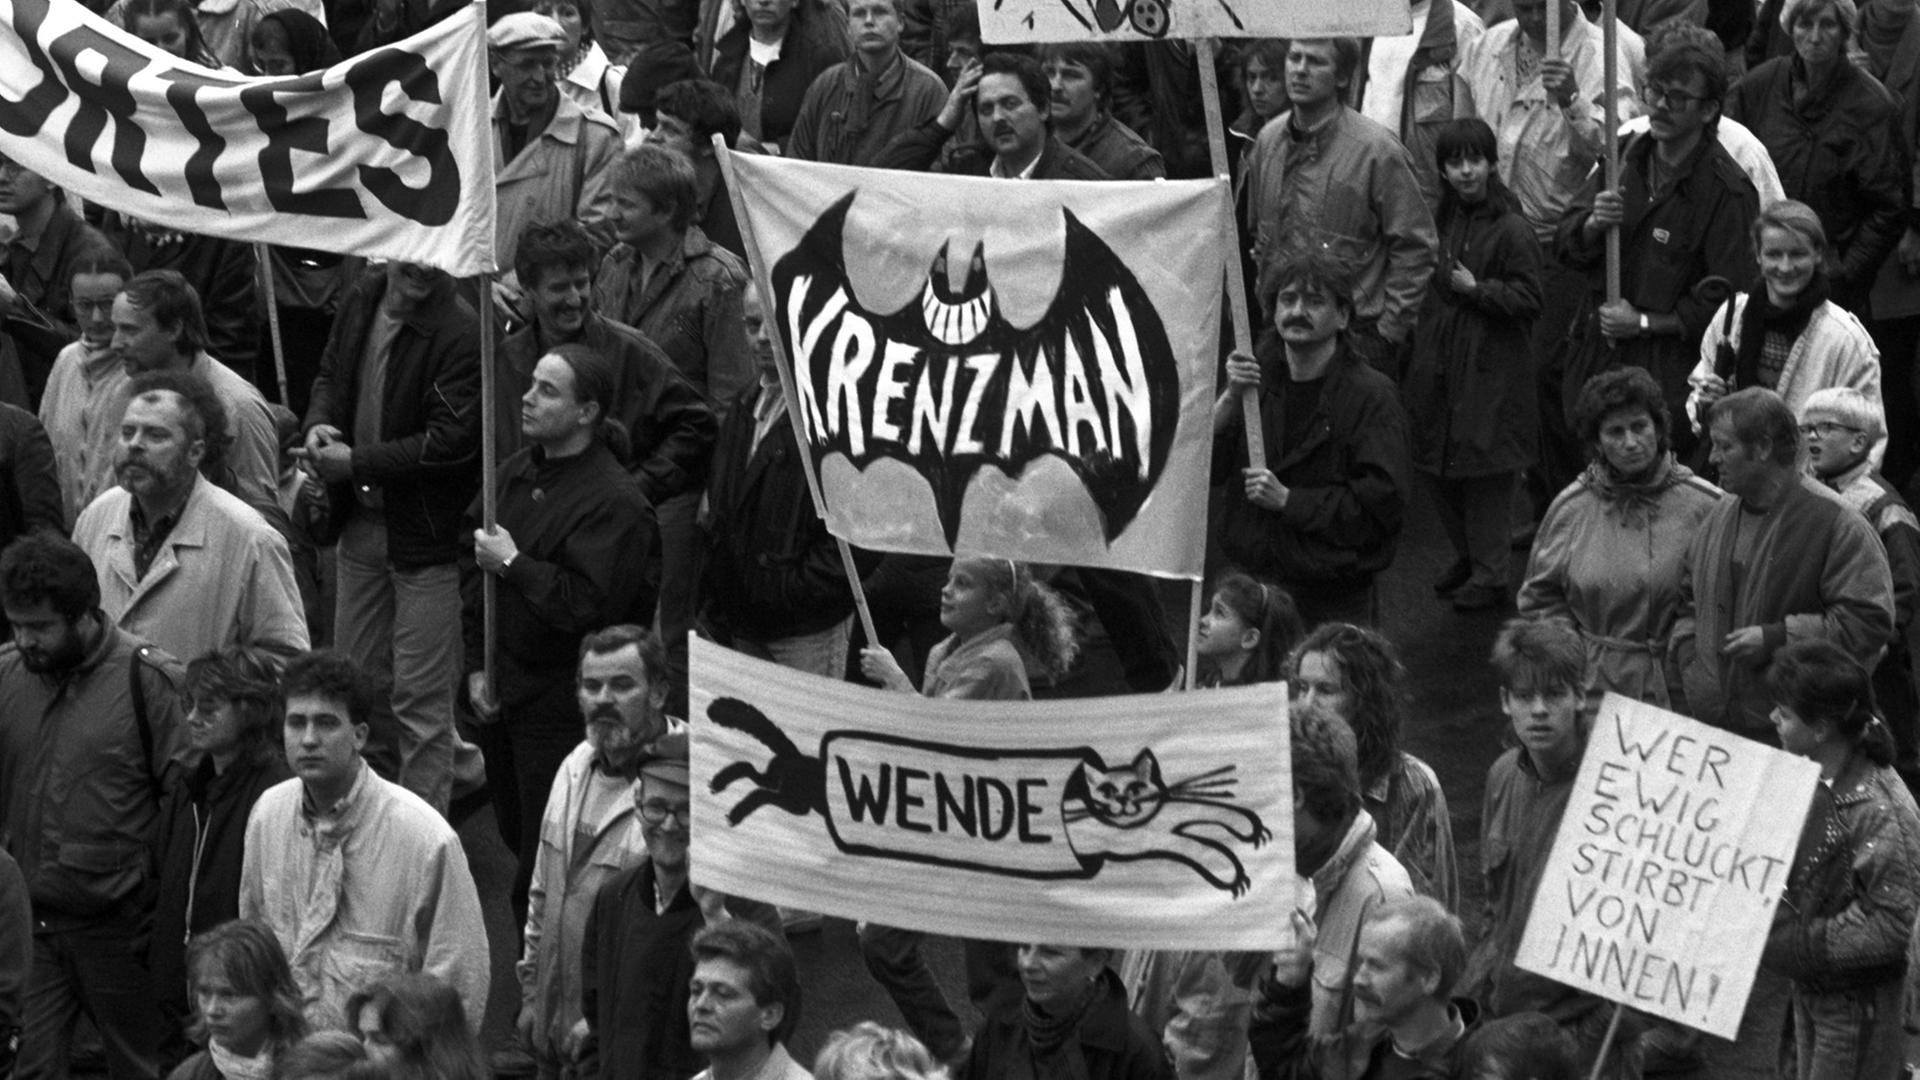 Bezeichnend für die Demonstration am 4.11.1989 waren die originellen Plakate und Banner.